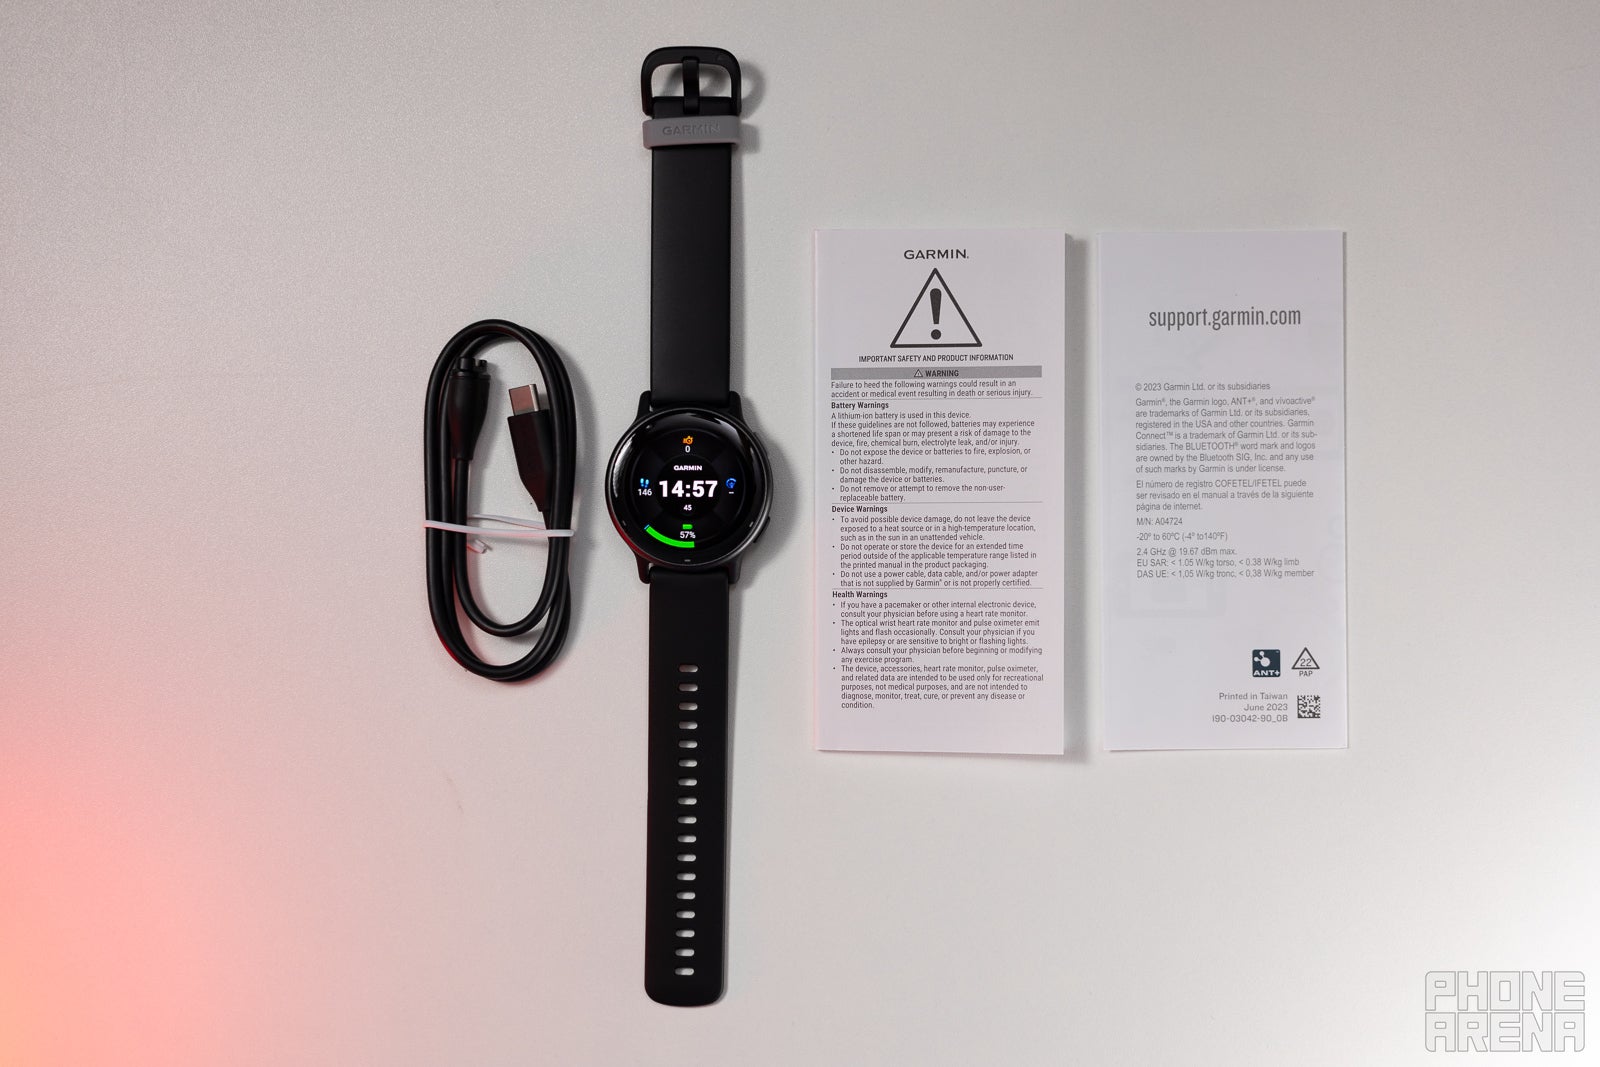 Vous obtenez un package très simple avec la montre, un câble de chargement et un manuel d'utilisation (Image de PhoneArena) - Garmin Vivoactive 5 Review : 300 $ bien dépensés